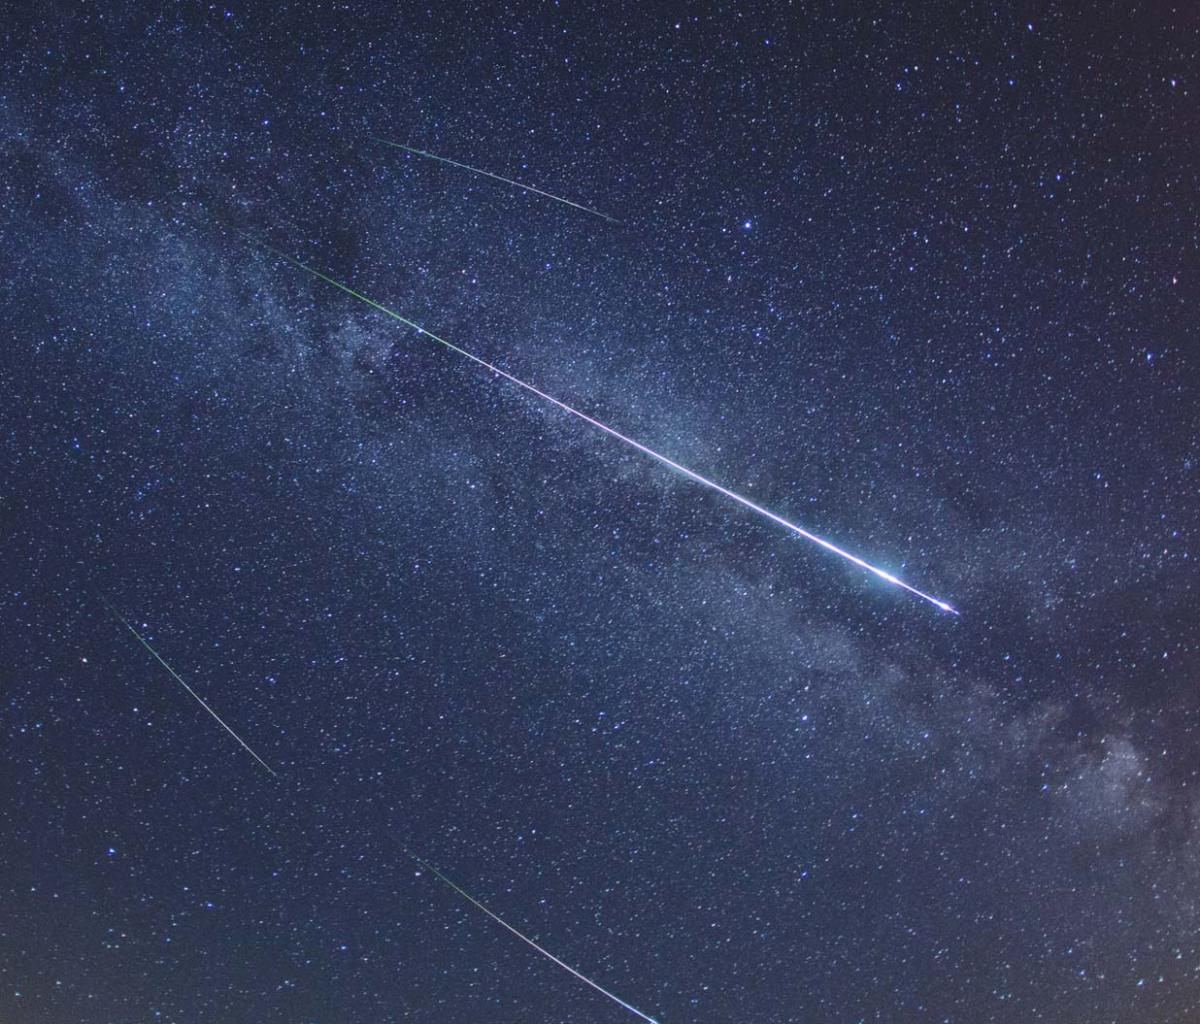 Annual Perseid meteor shower peaks this weekend